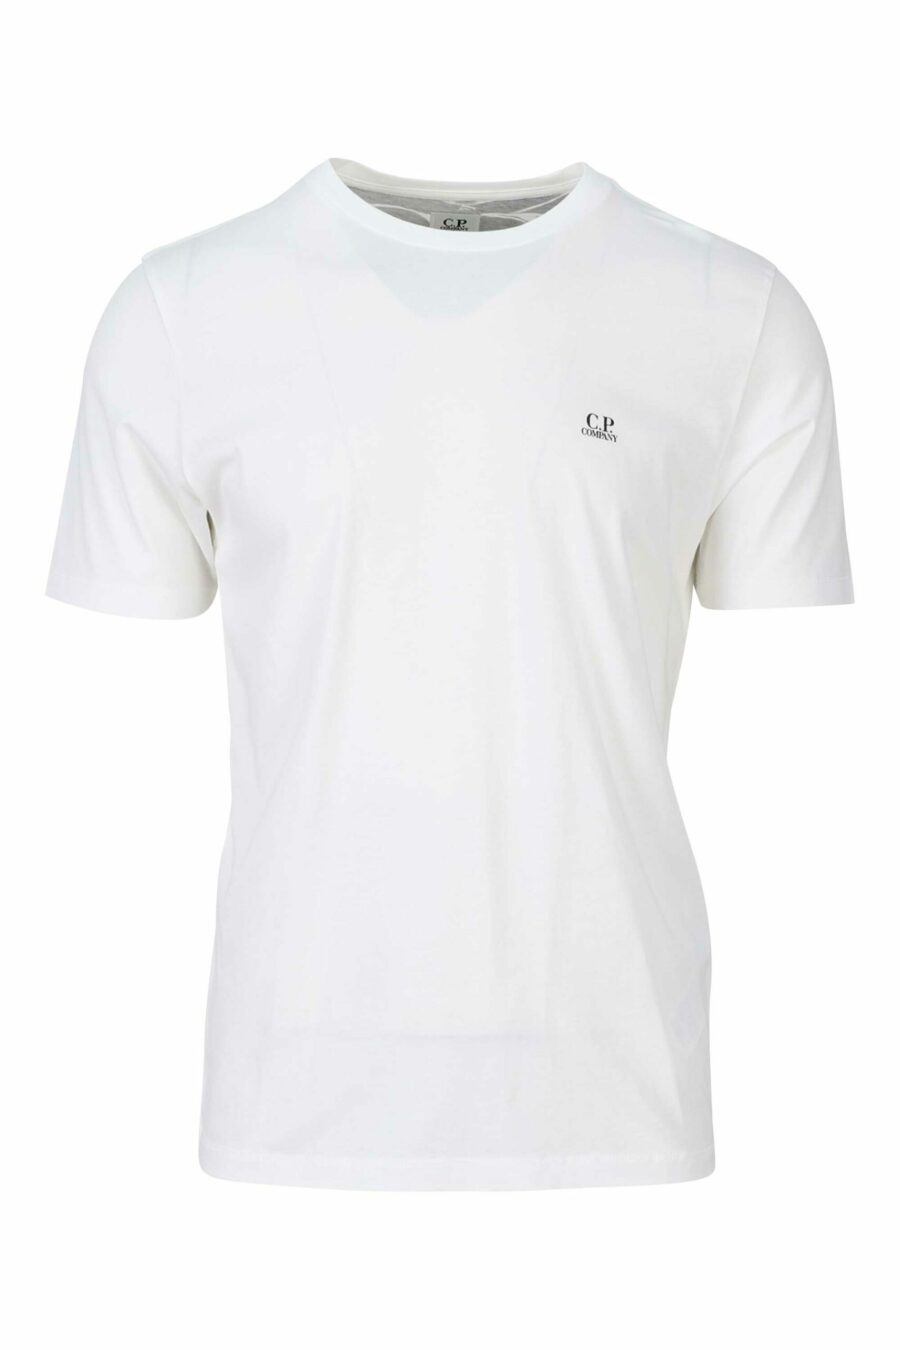 Camiseta blanca con capucha y logo parche - 7620943570397 1 scaled